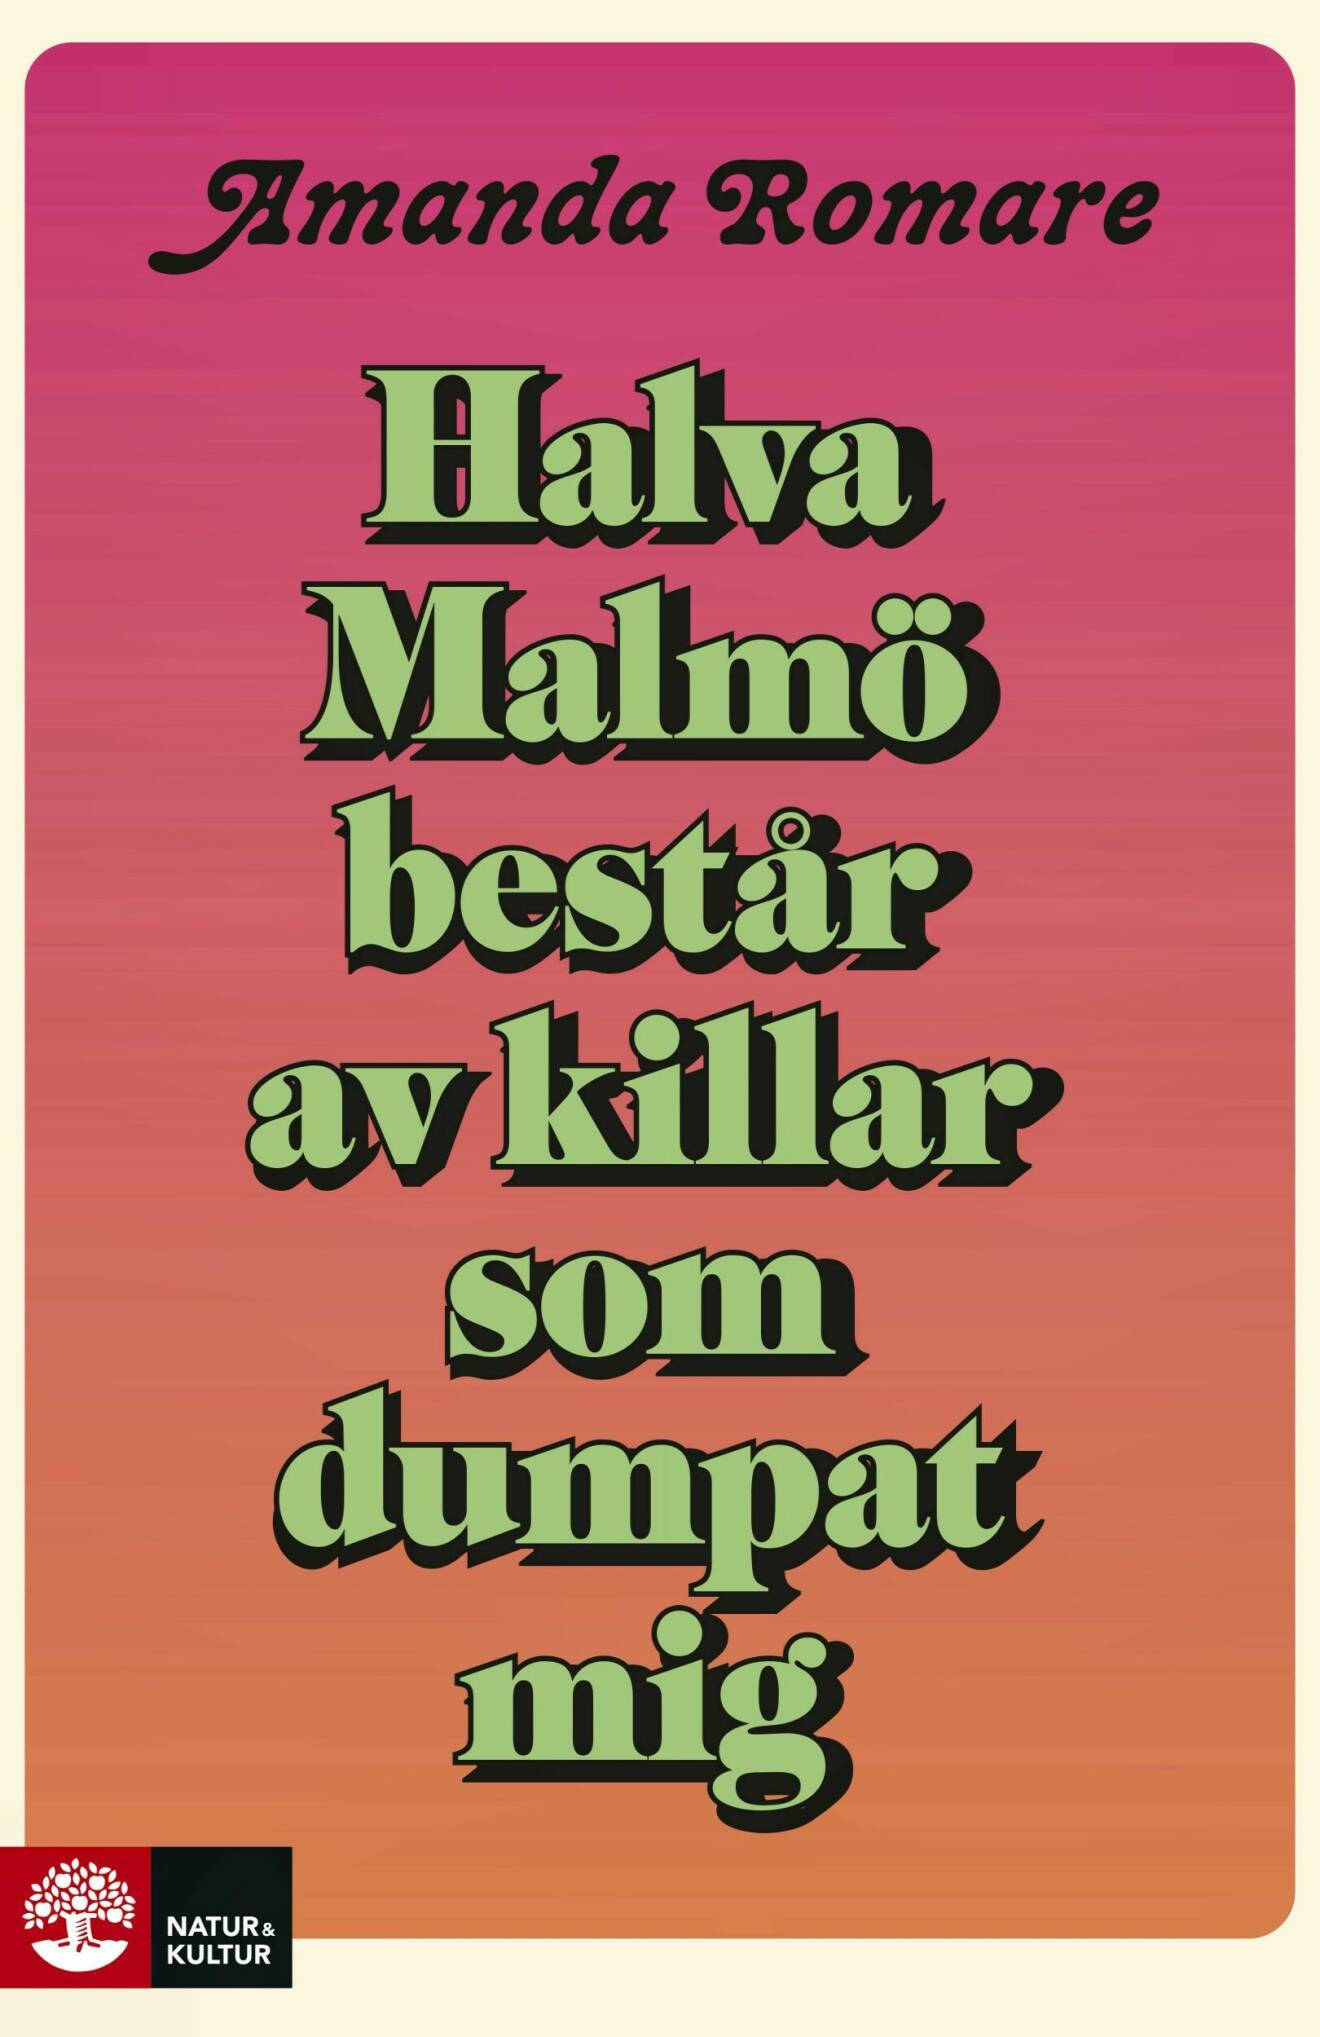 Halva Malmö består av killar som dumpat mig av Amanda Romare.